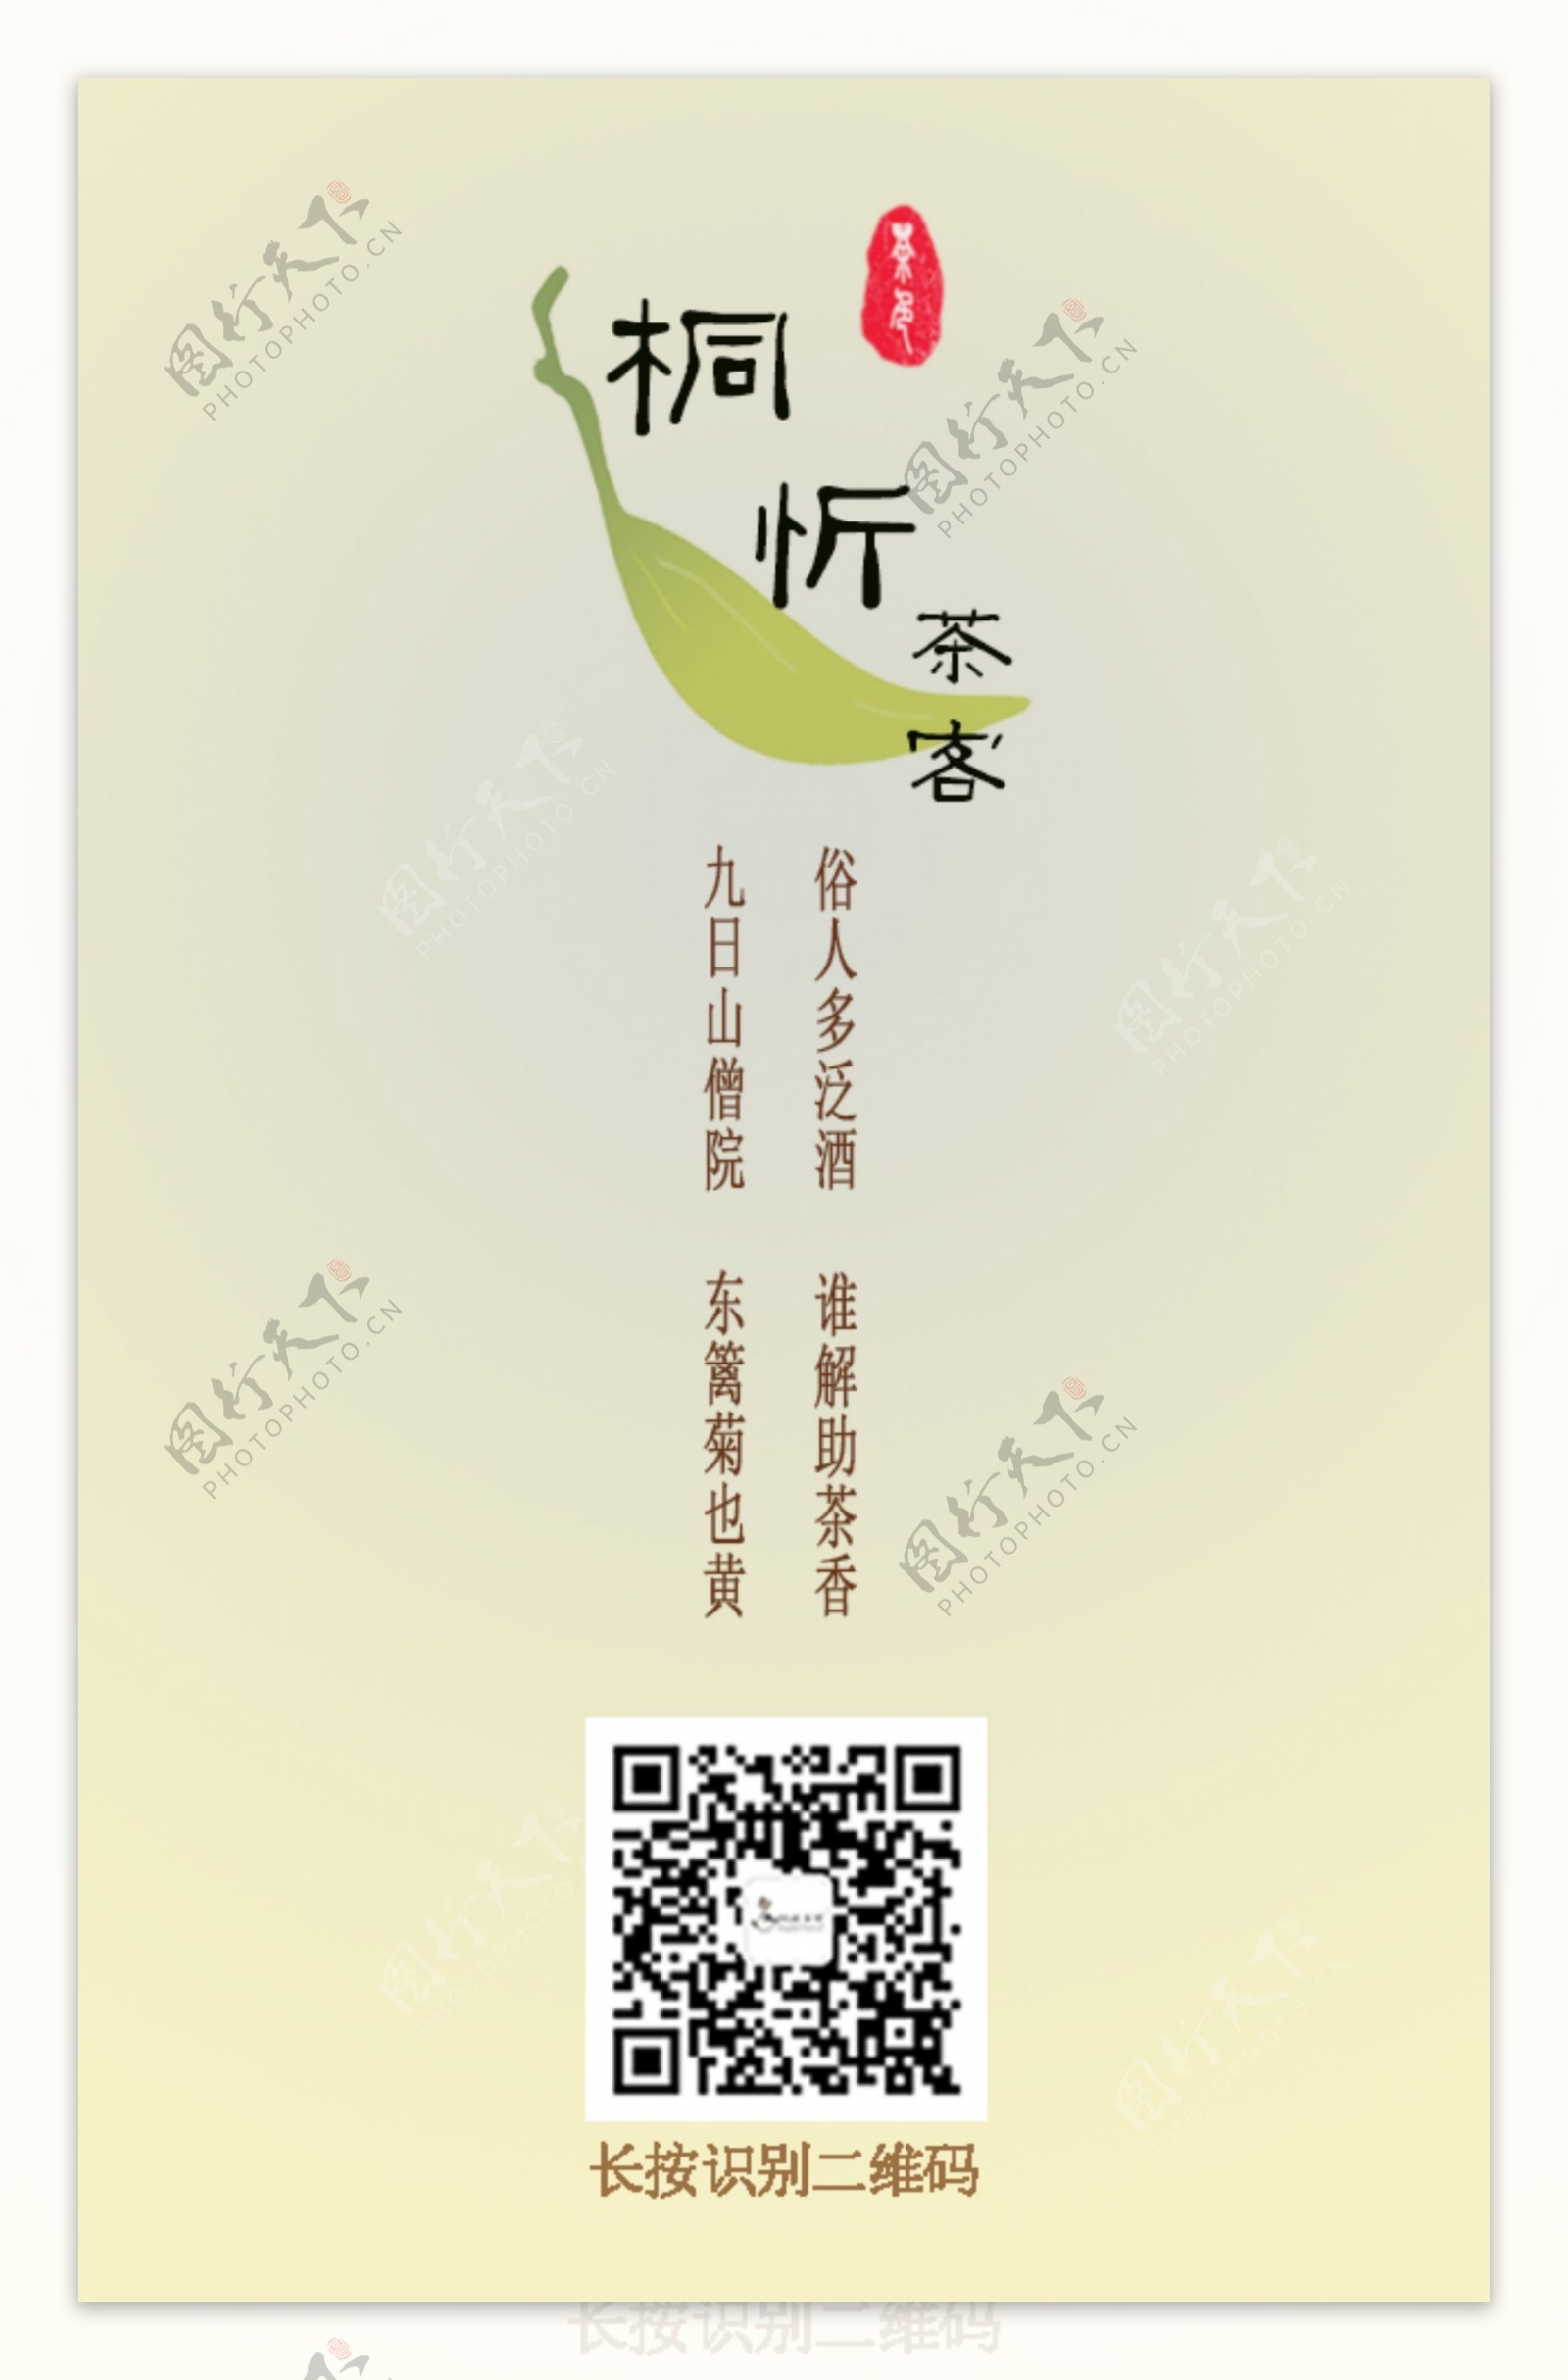 茶叶商城扫描二维码海报